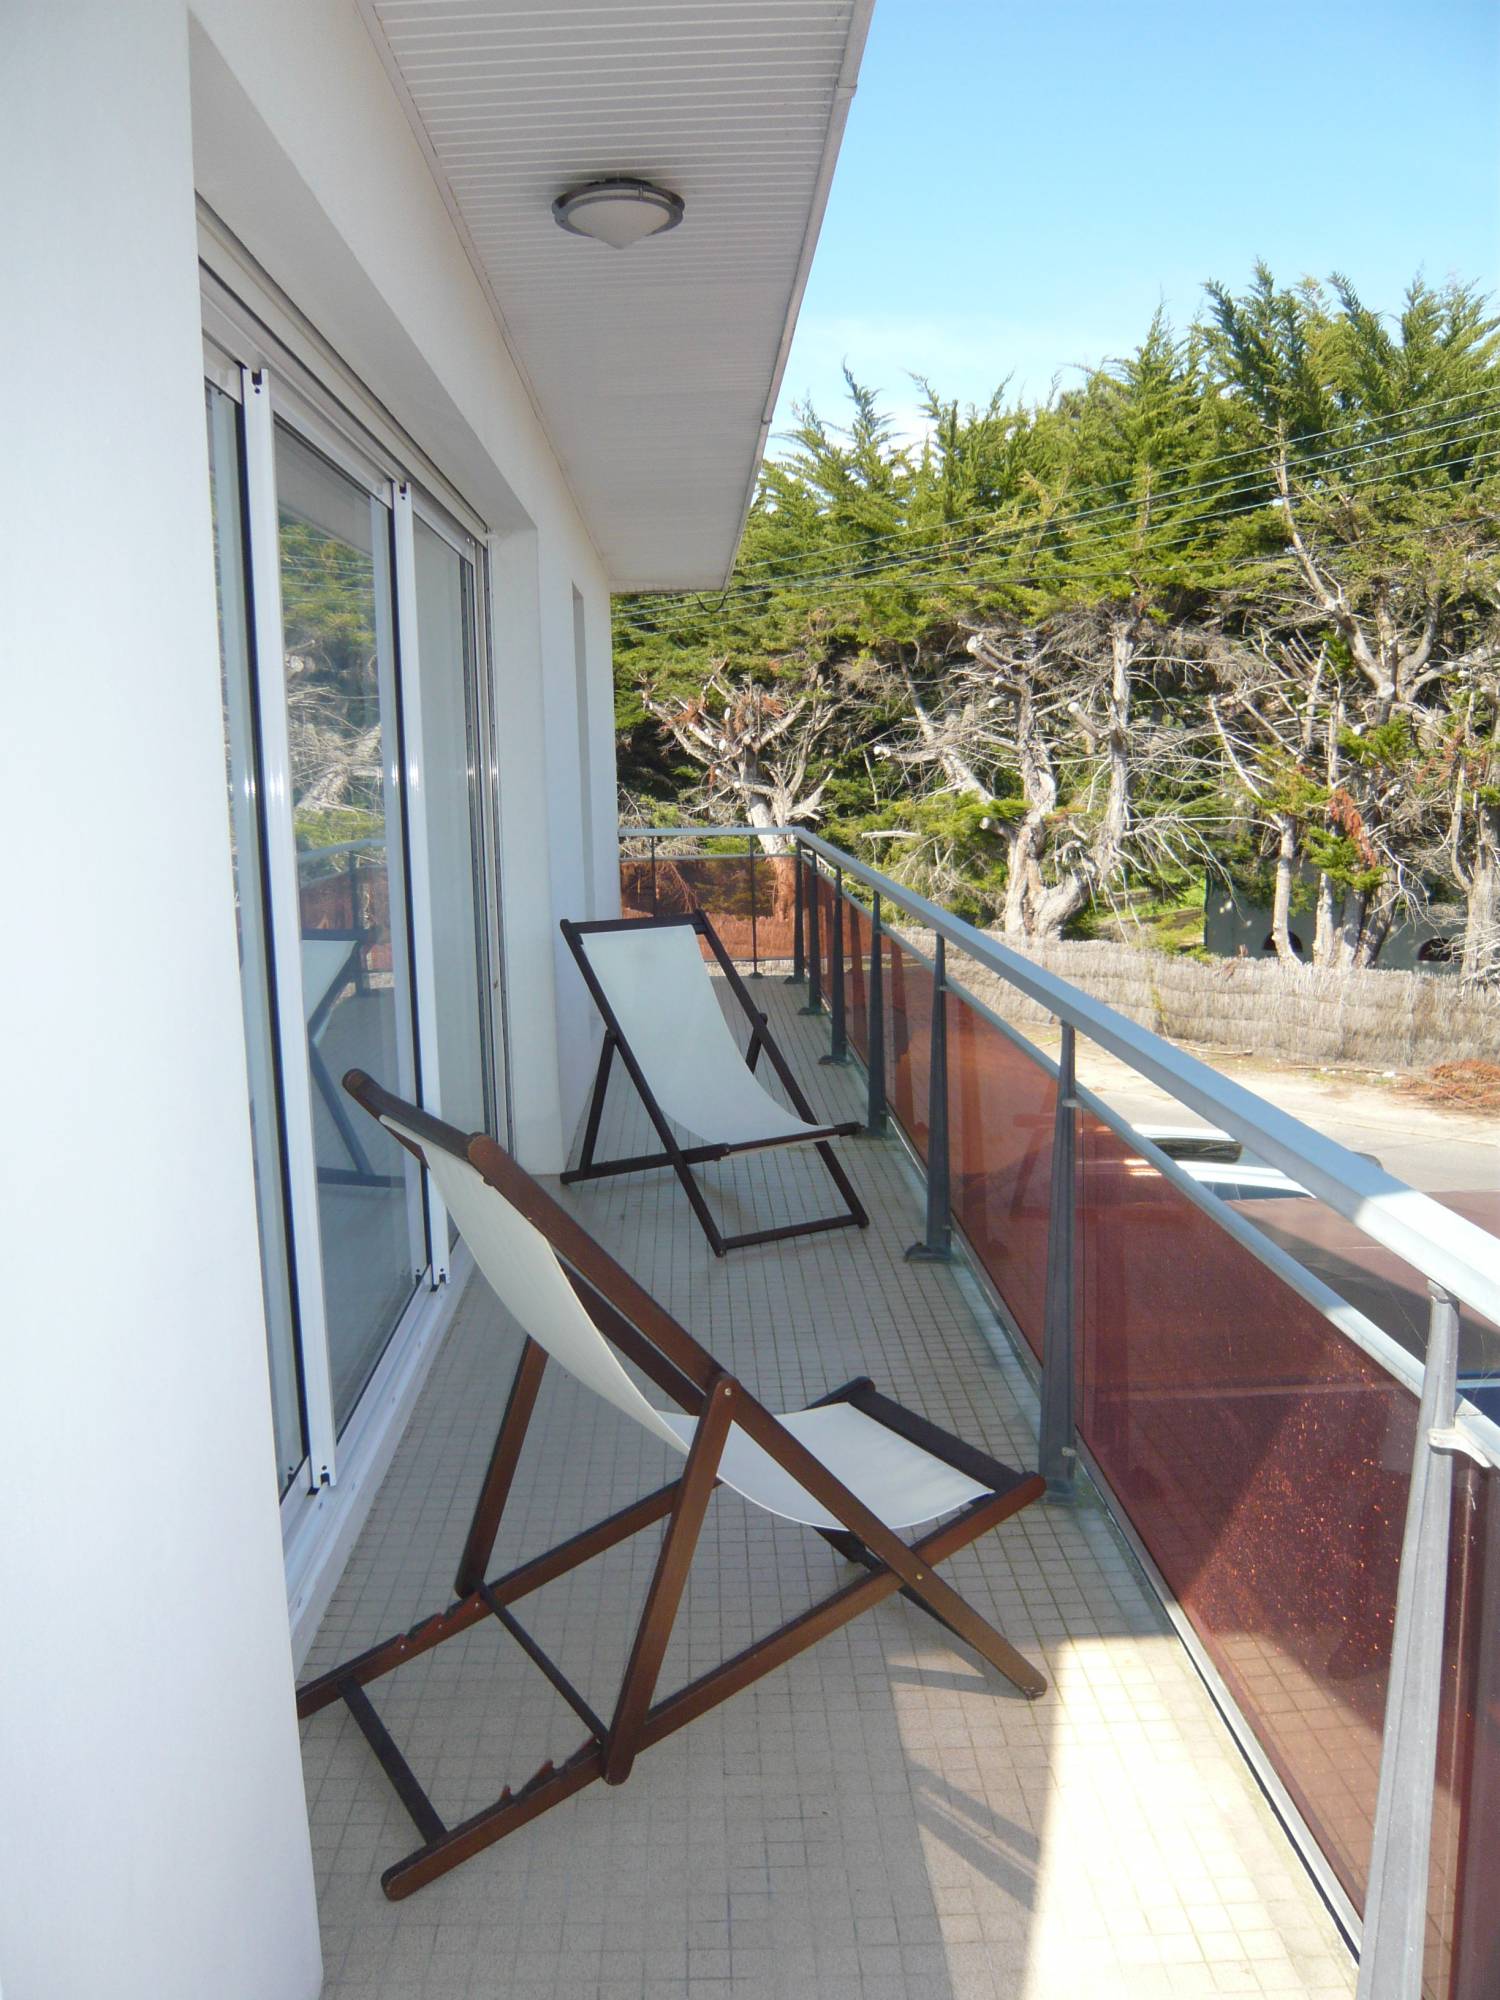 Location appartement 2 chambres climatisé proche plage - Cap-Ferret Centre